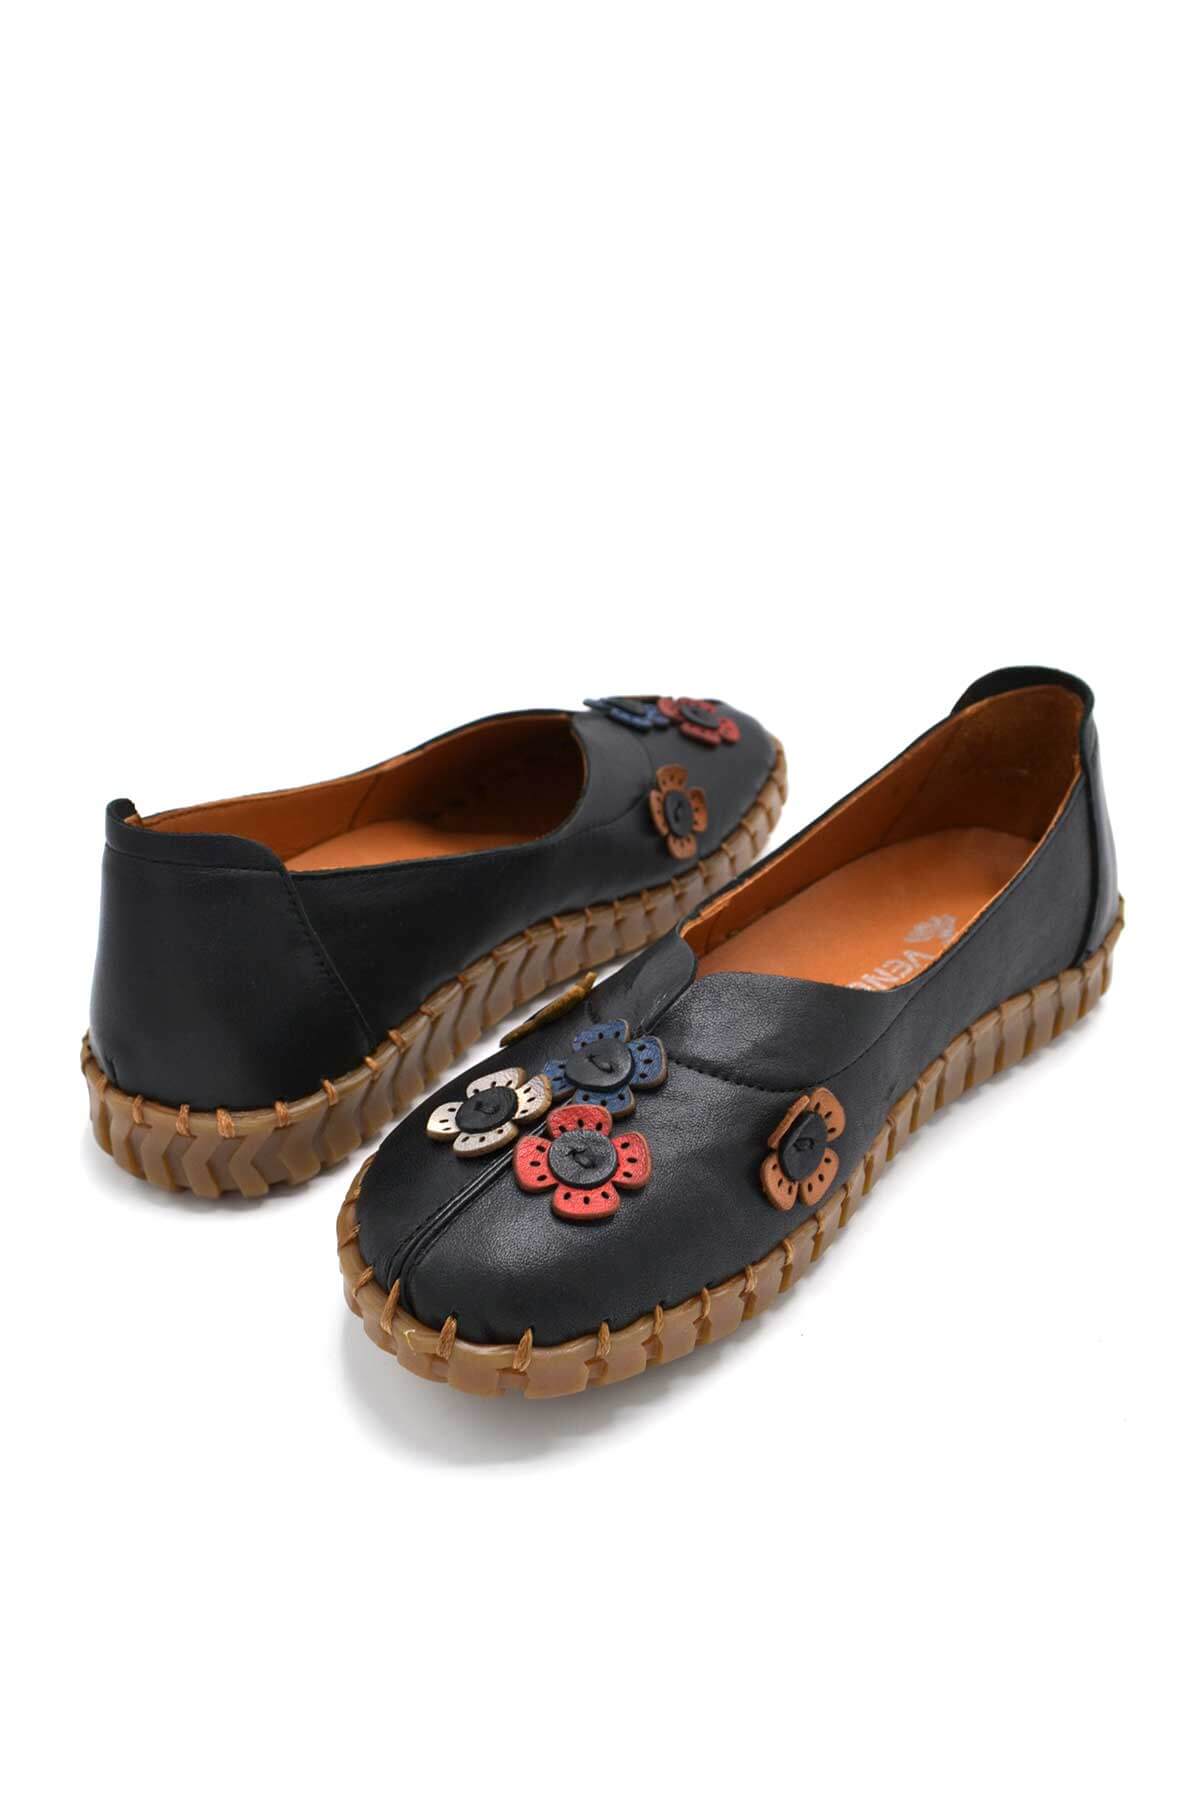 Kadın Comfort Deri Ayakkabı Siyah 2010711Y - Thumbnail